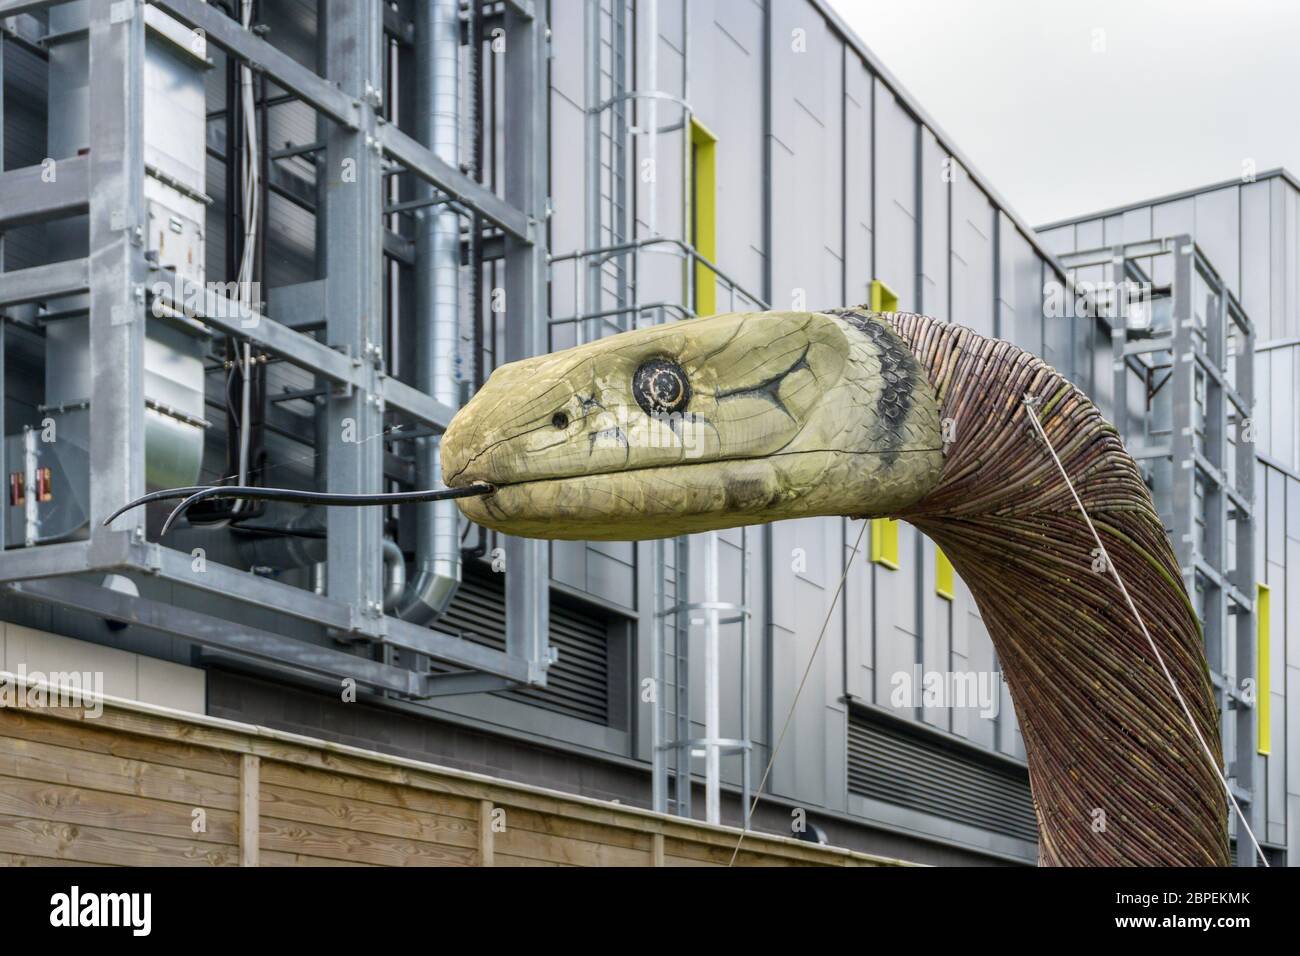 Sculpture de serpent en rotin et en bois devant un bâtiment industriel moderne, centre commercial Rushden Lakes, Northamptonshire, Royaume-Uni Banque D'Images